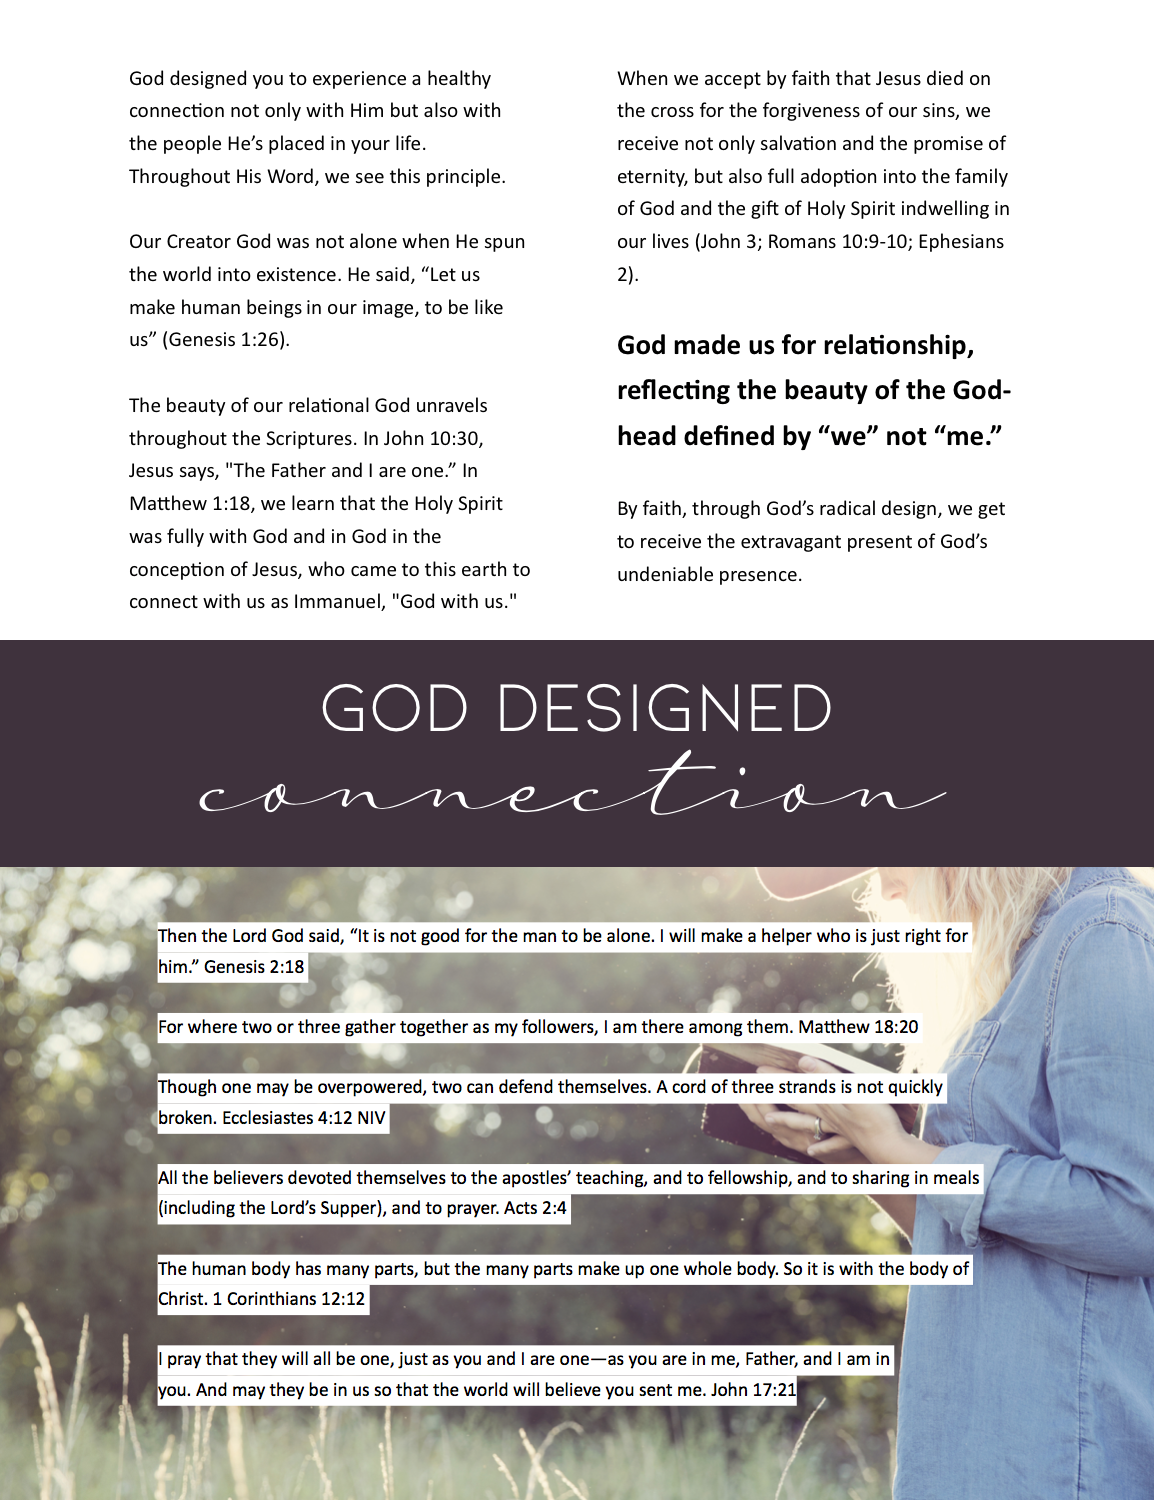 God Designed Connection